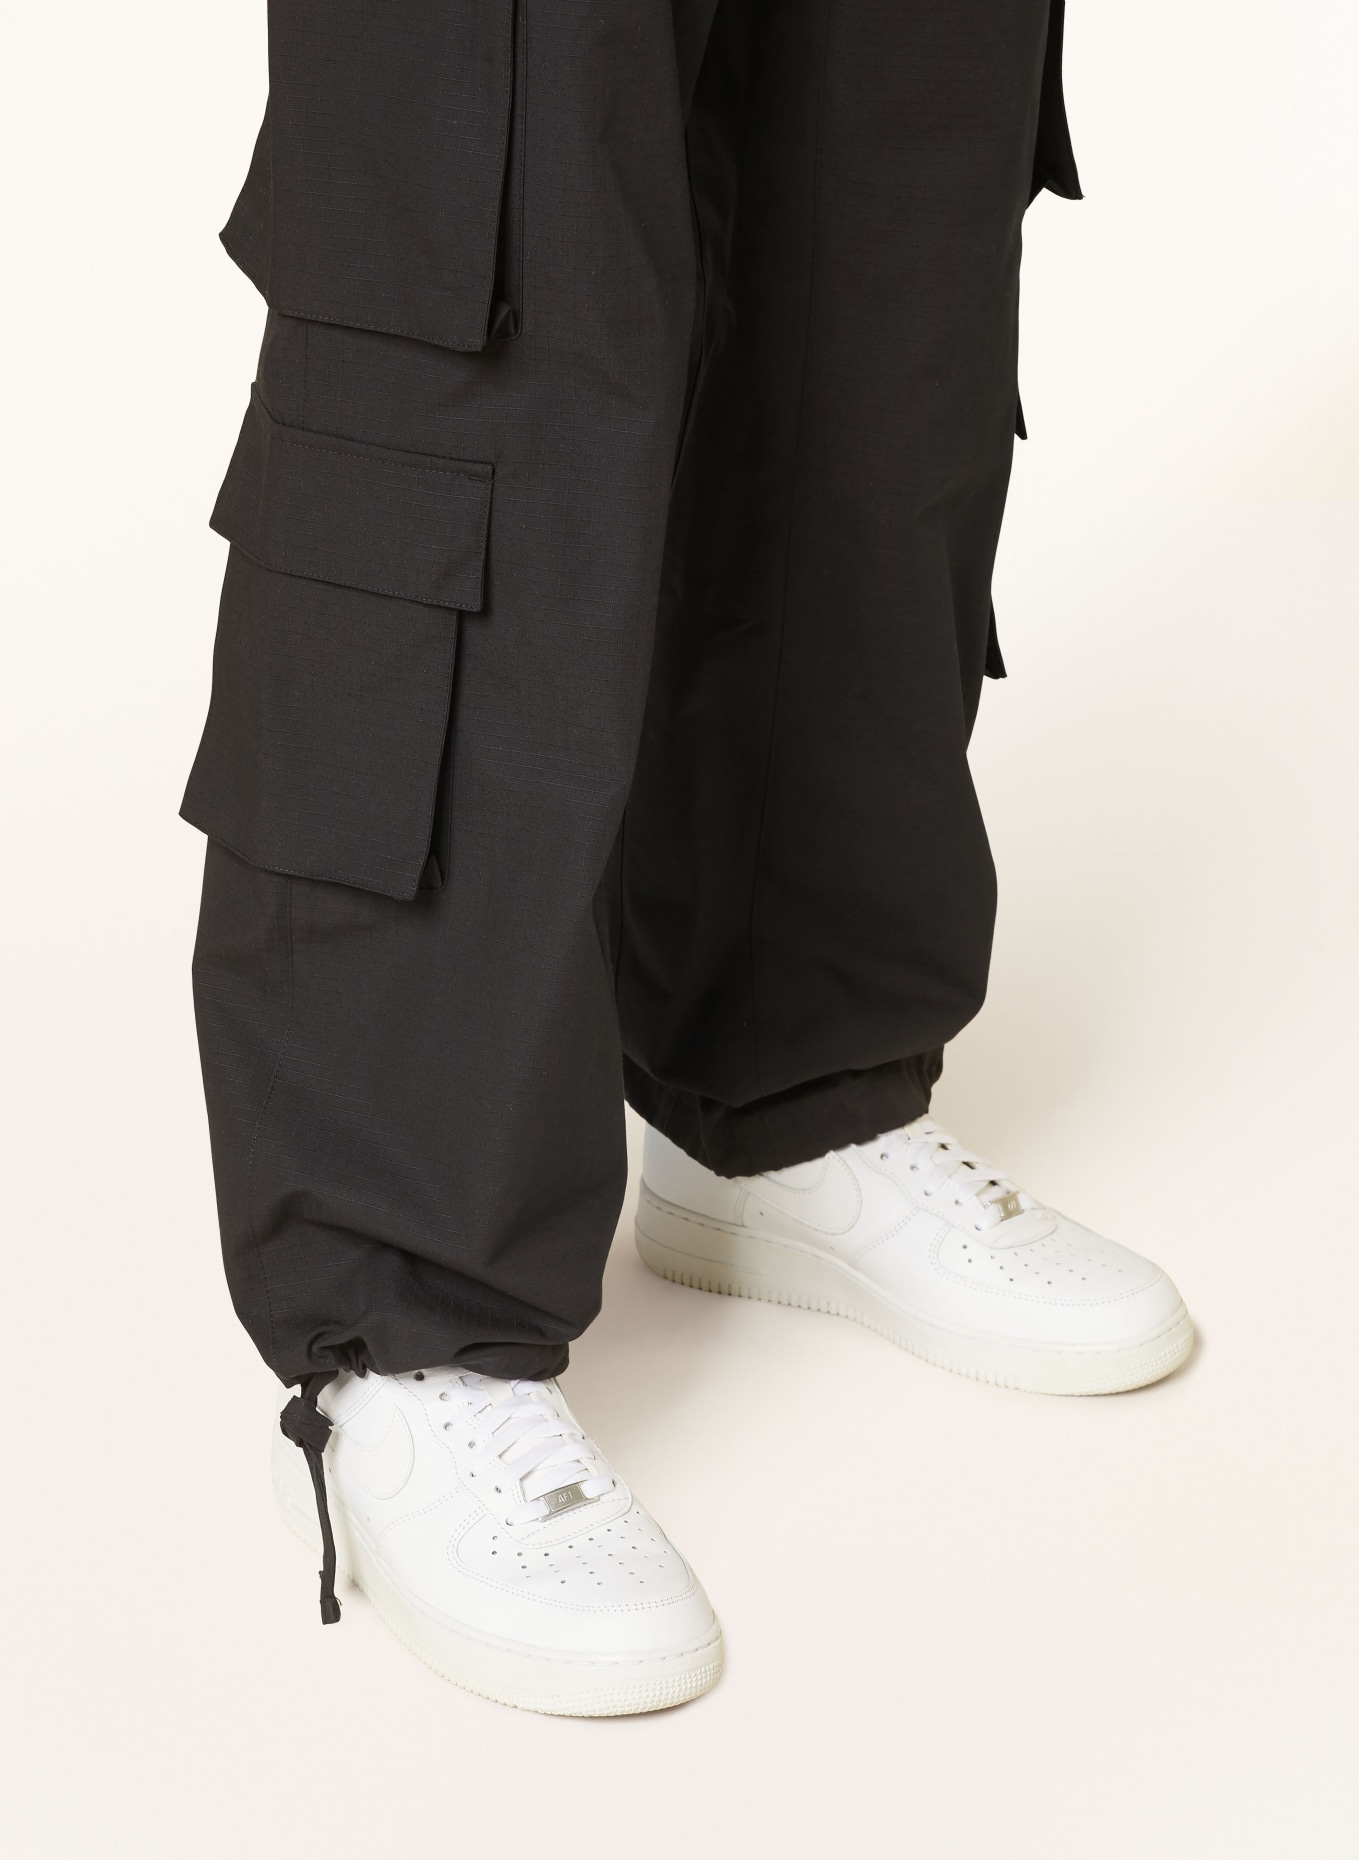 PEQUS Cargo pants regular fit, Color: BLACK (Image 7)